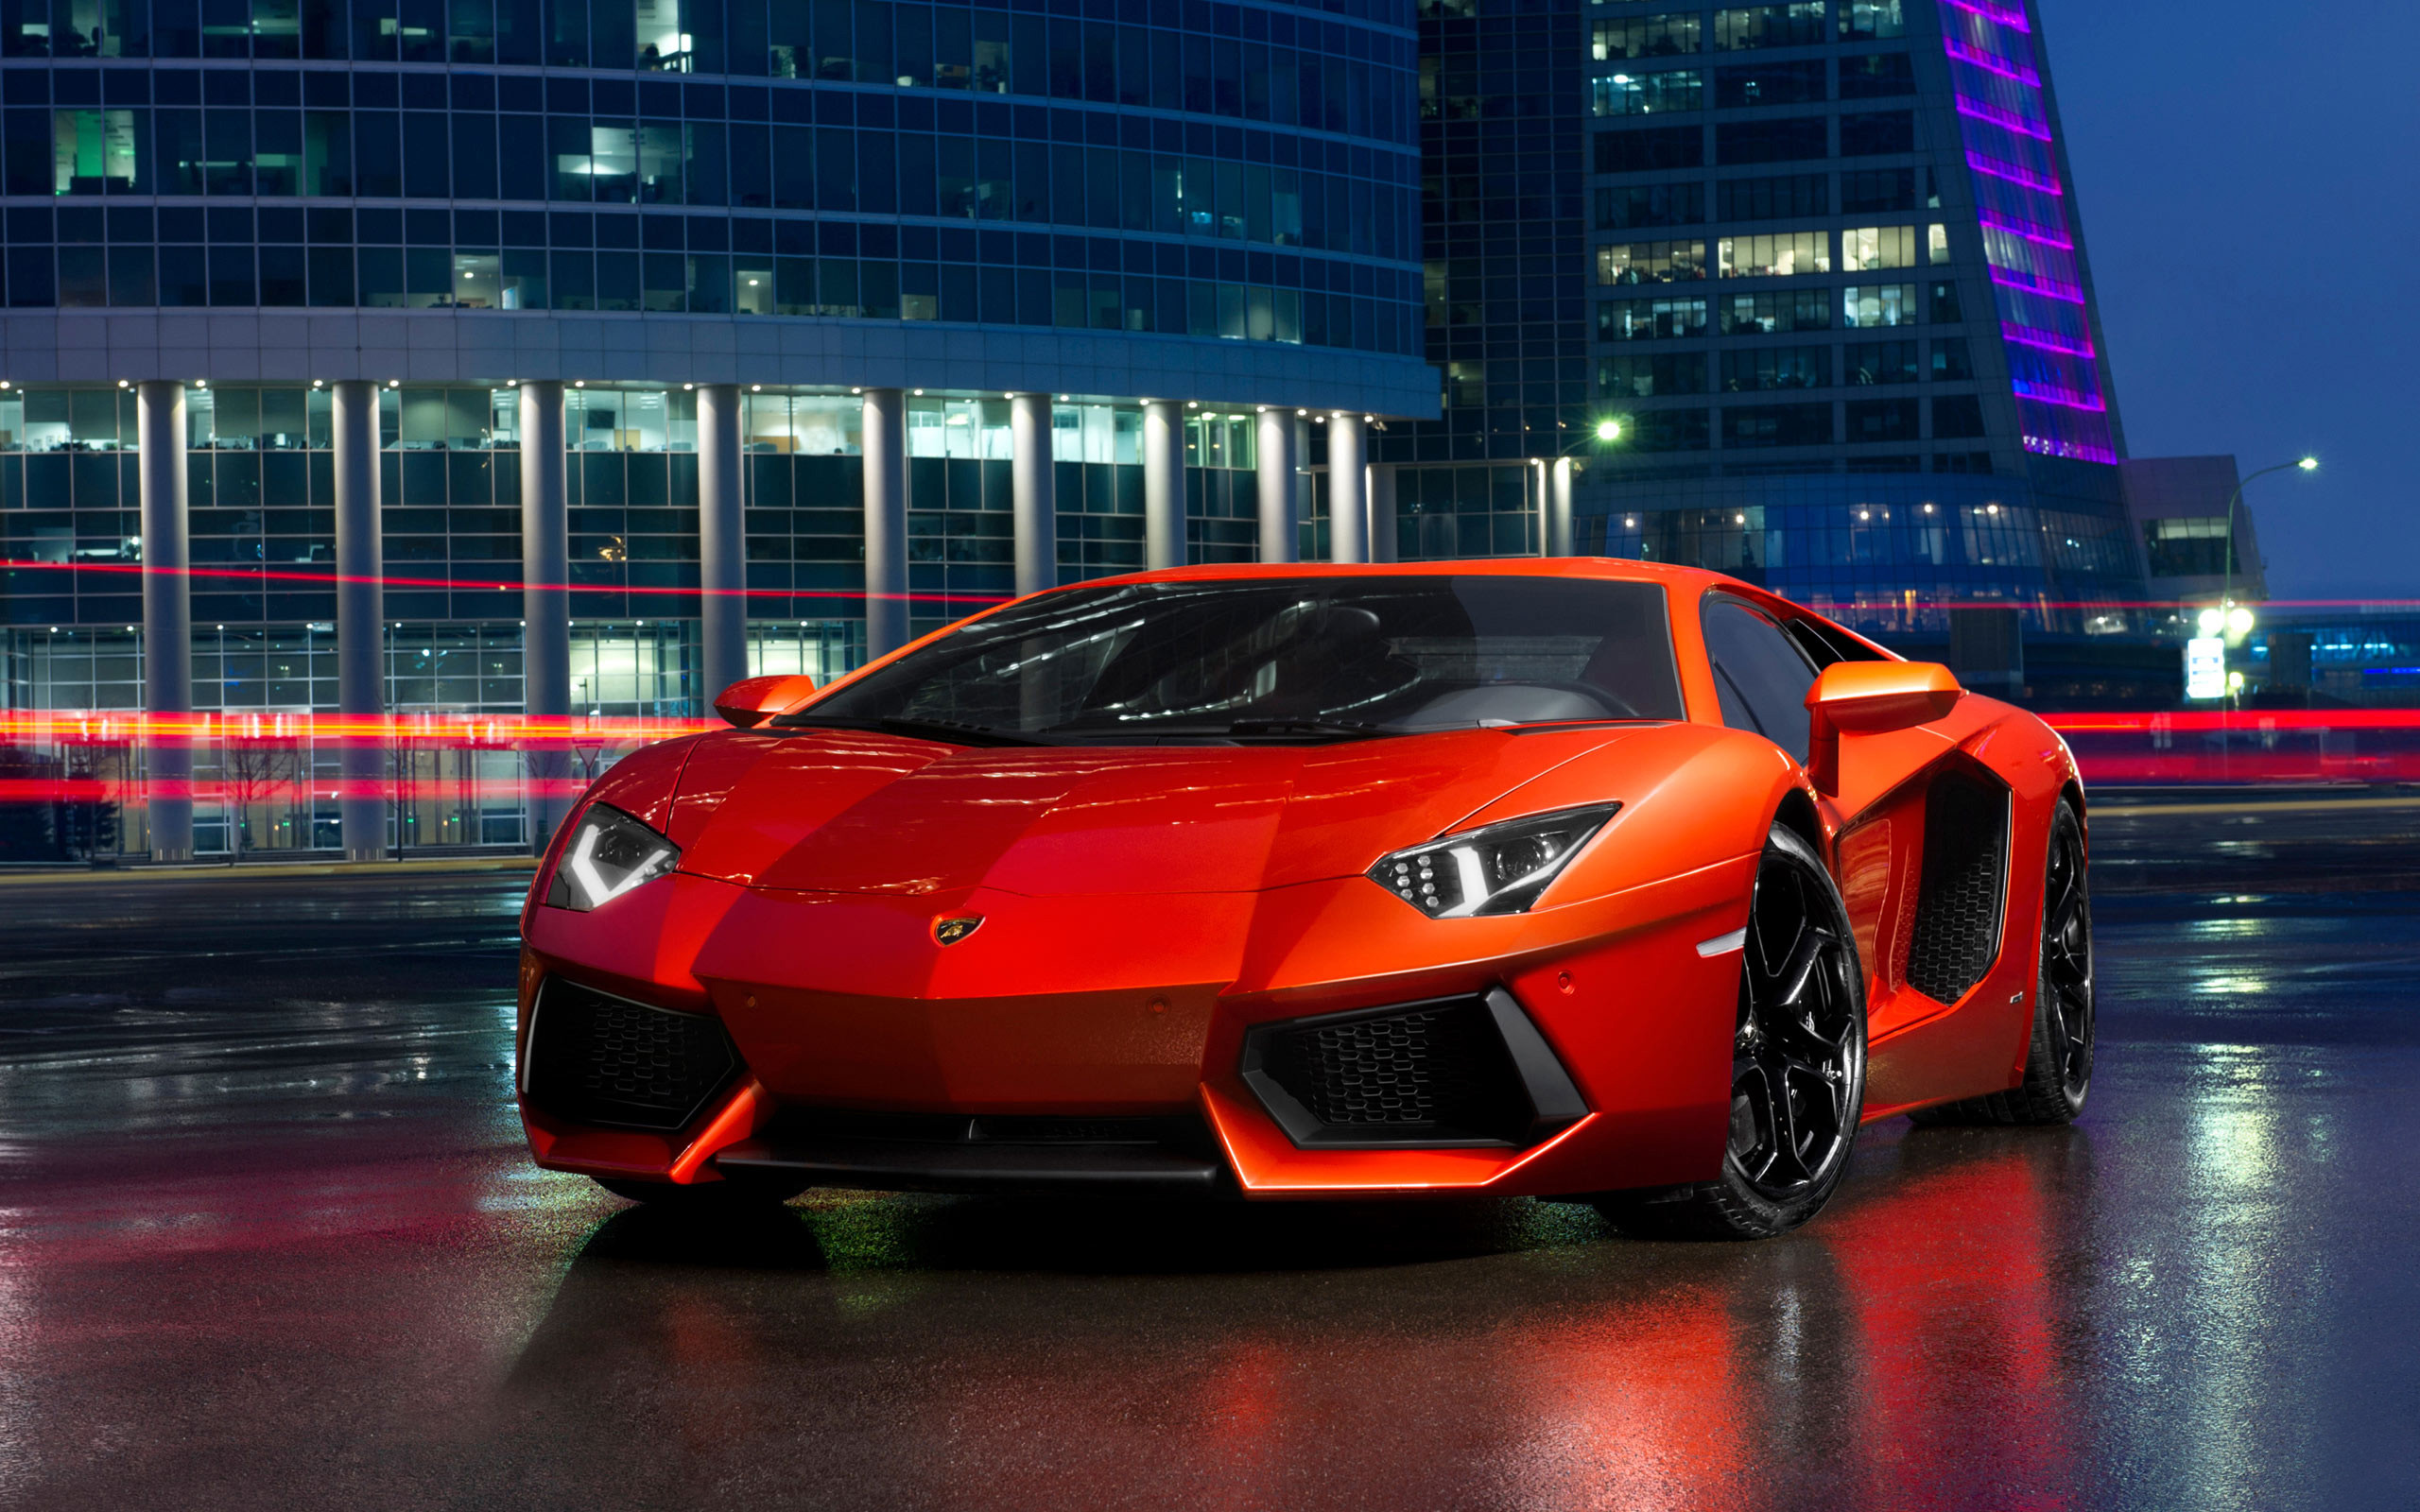 Bộ ảnh nền Lamborghini với đầy đủ màu sắc và kiểu dáng để bạn có thể lựa chọn. Những hình ảnh đẹp mắt sẽ giúp cho màn hình điện thoại của bạn thêm cá tính và độc đáo.